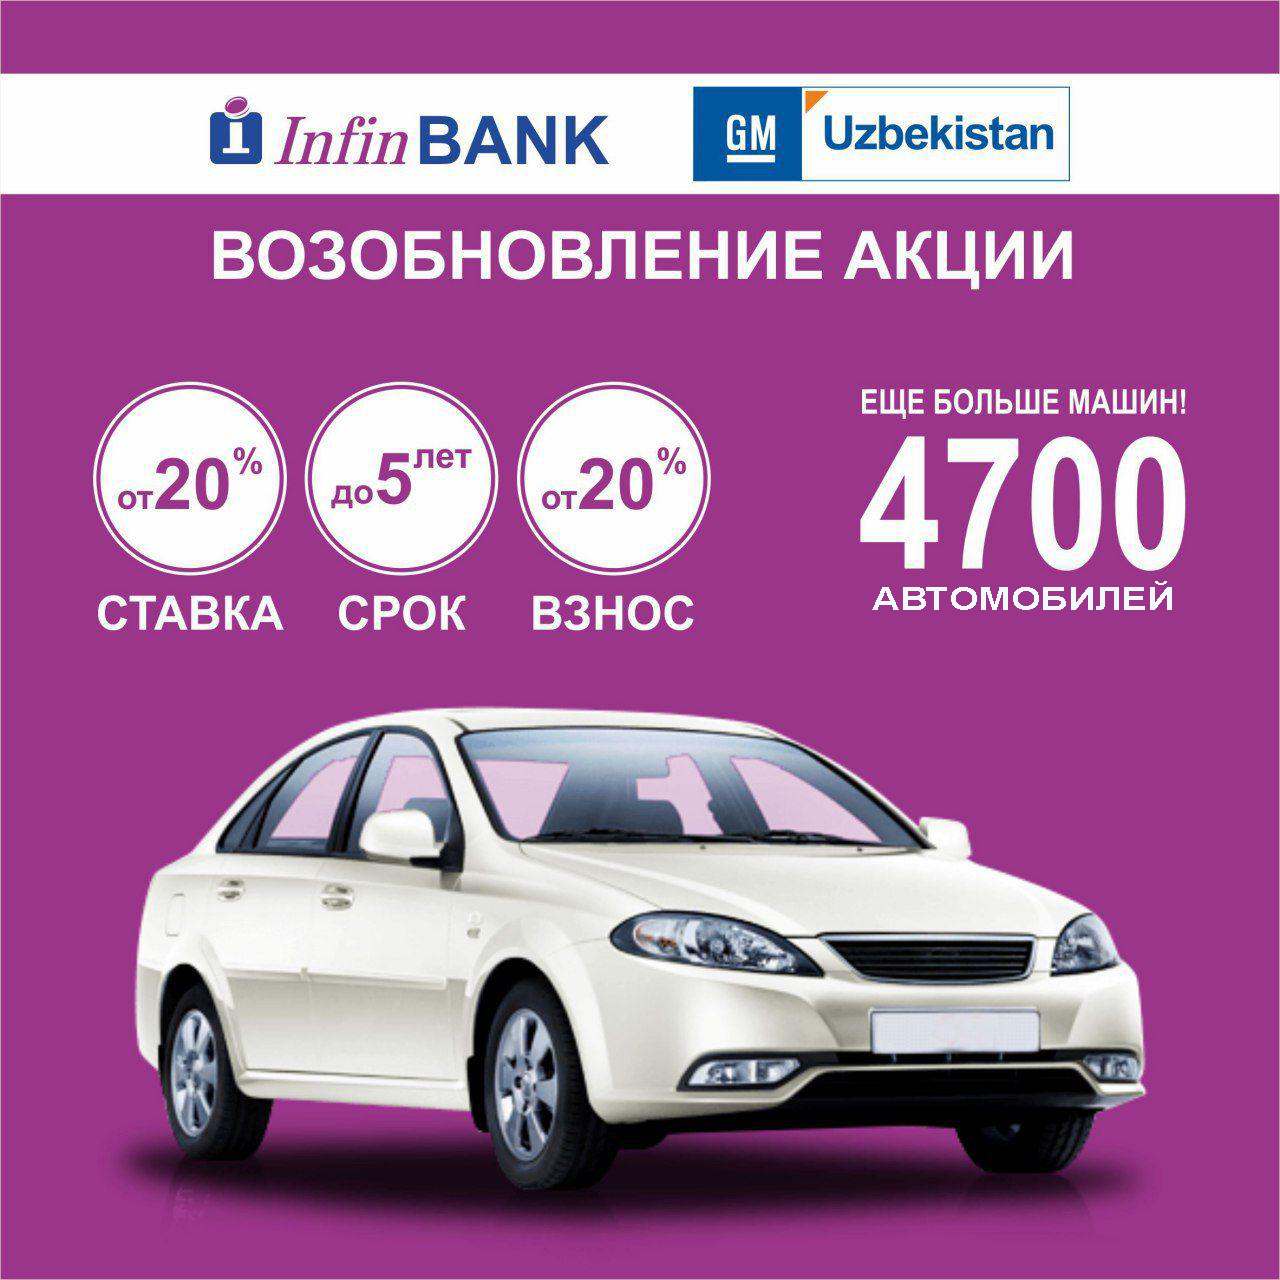 Совместная акция по льготному автокредитованию АО «GM Uzbekistan» с АКБ «InfinBANK» продолжается